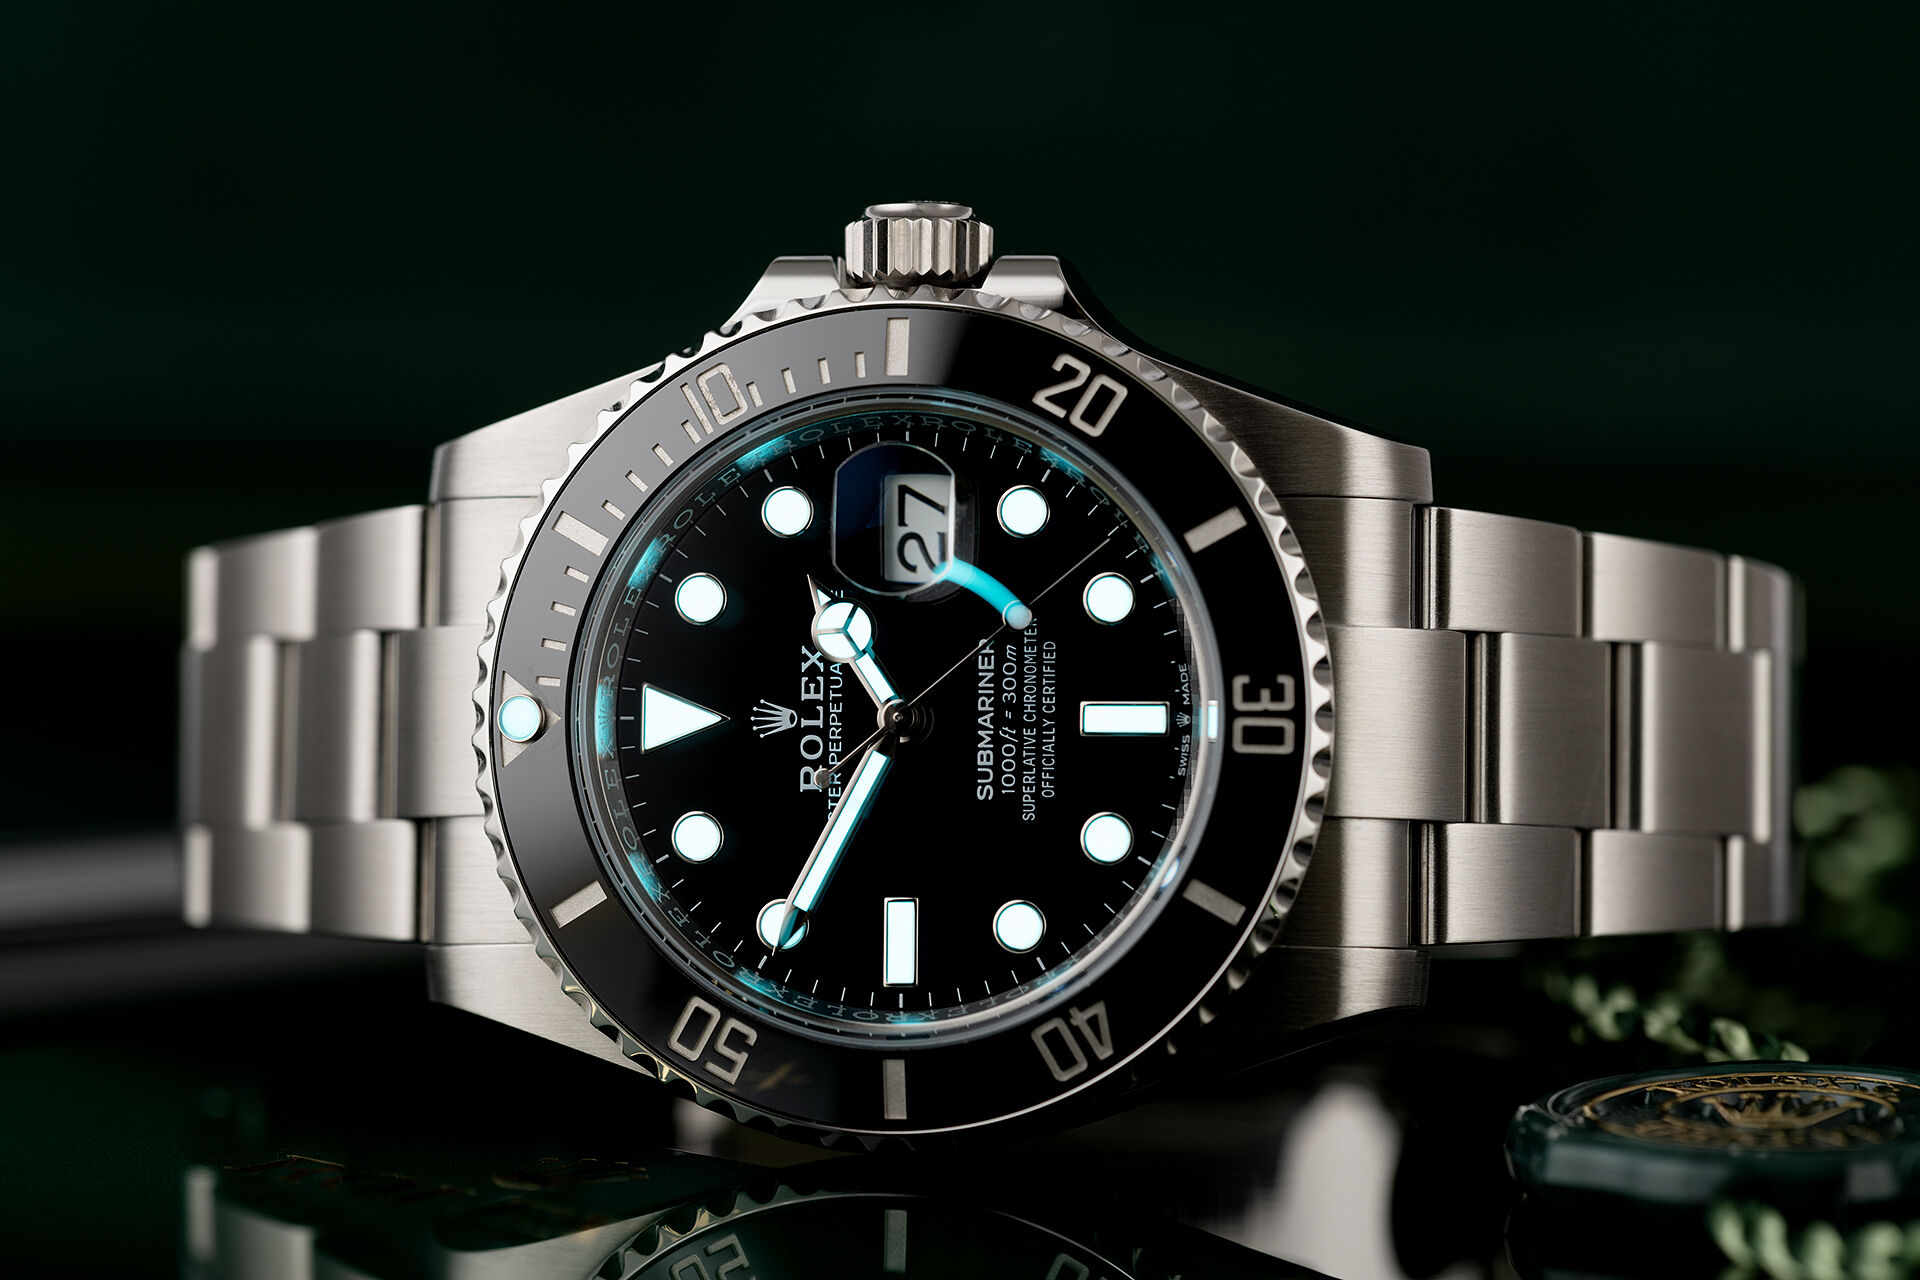 ref 126610LN | Rolex Warranty to 2026 | Rolex Submariner Date